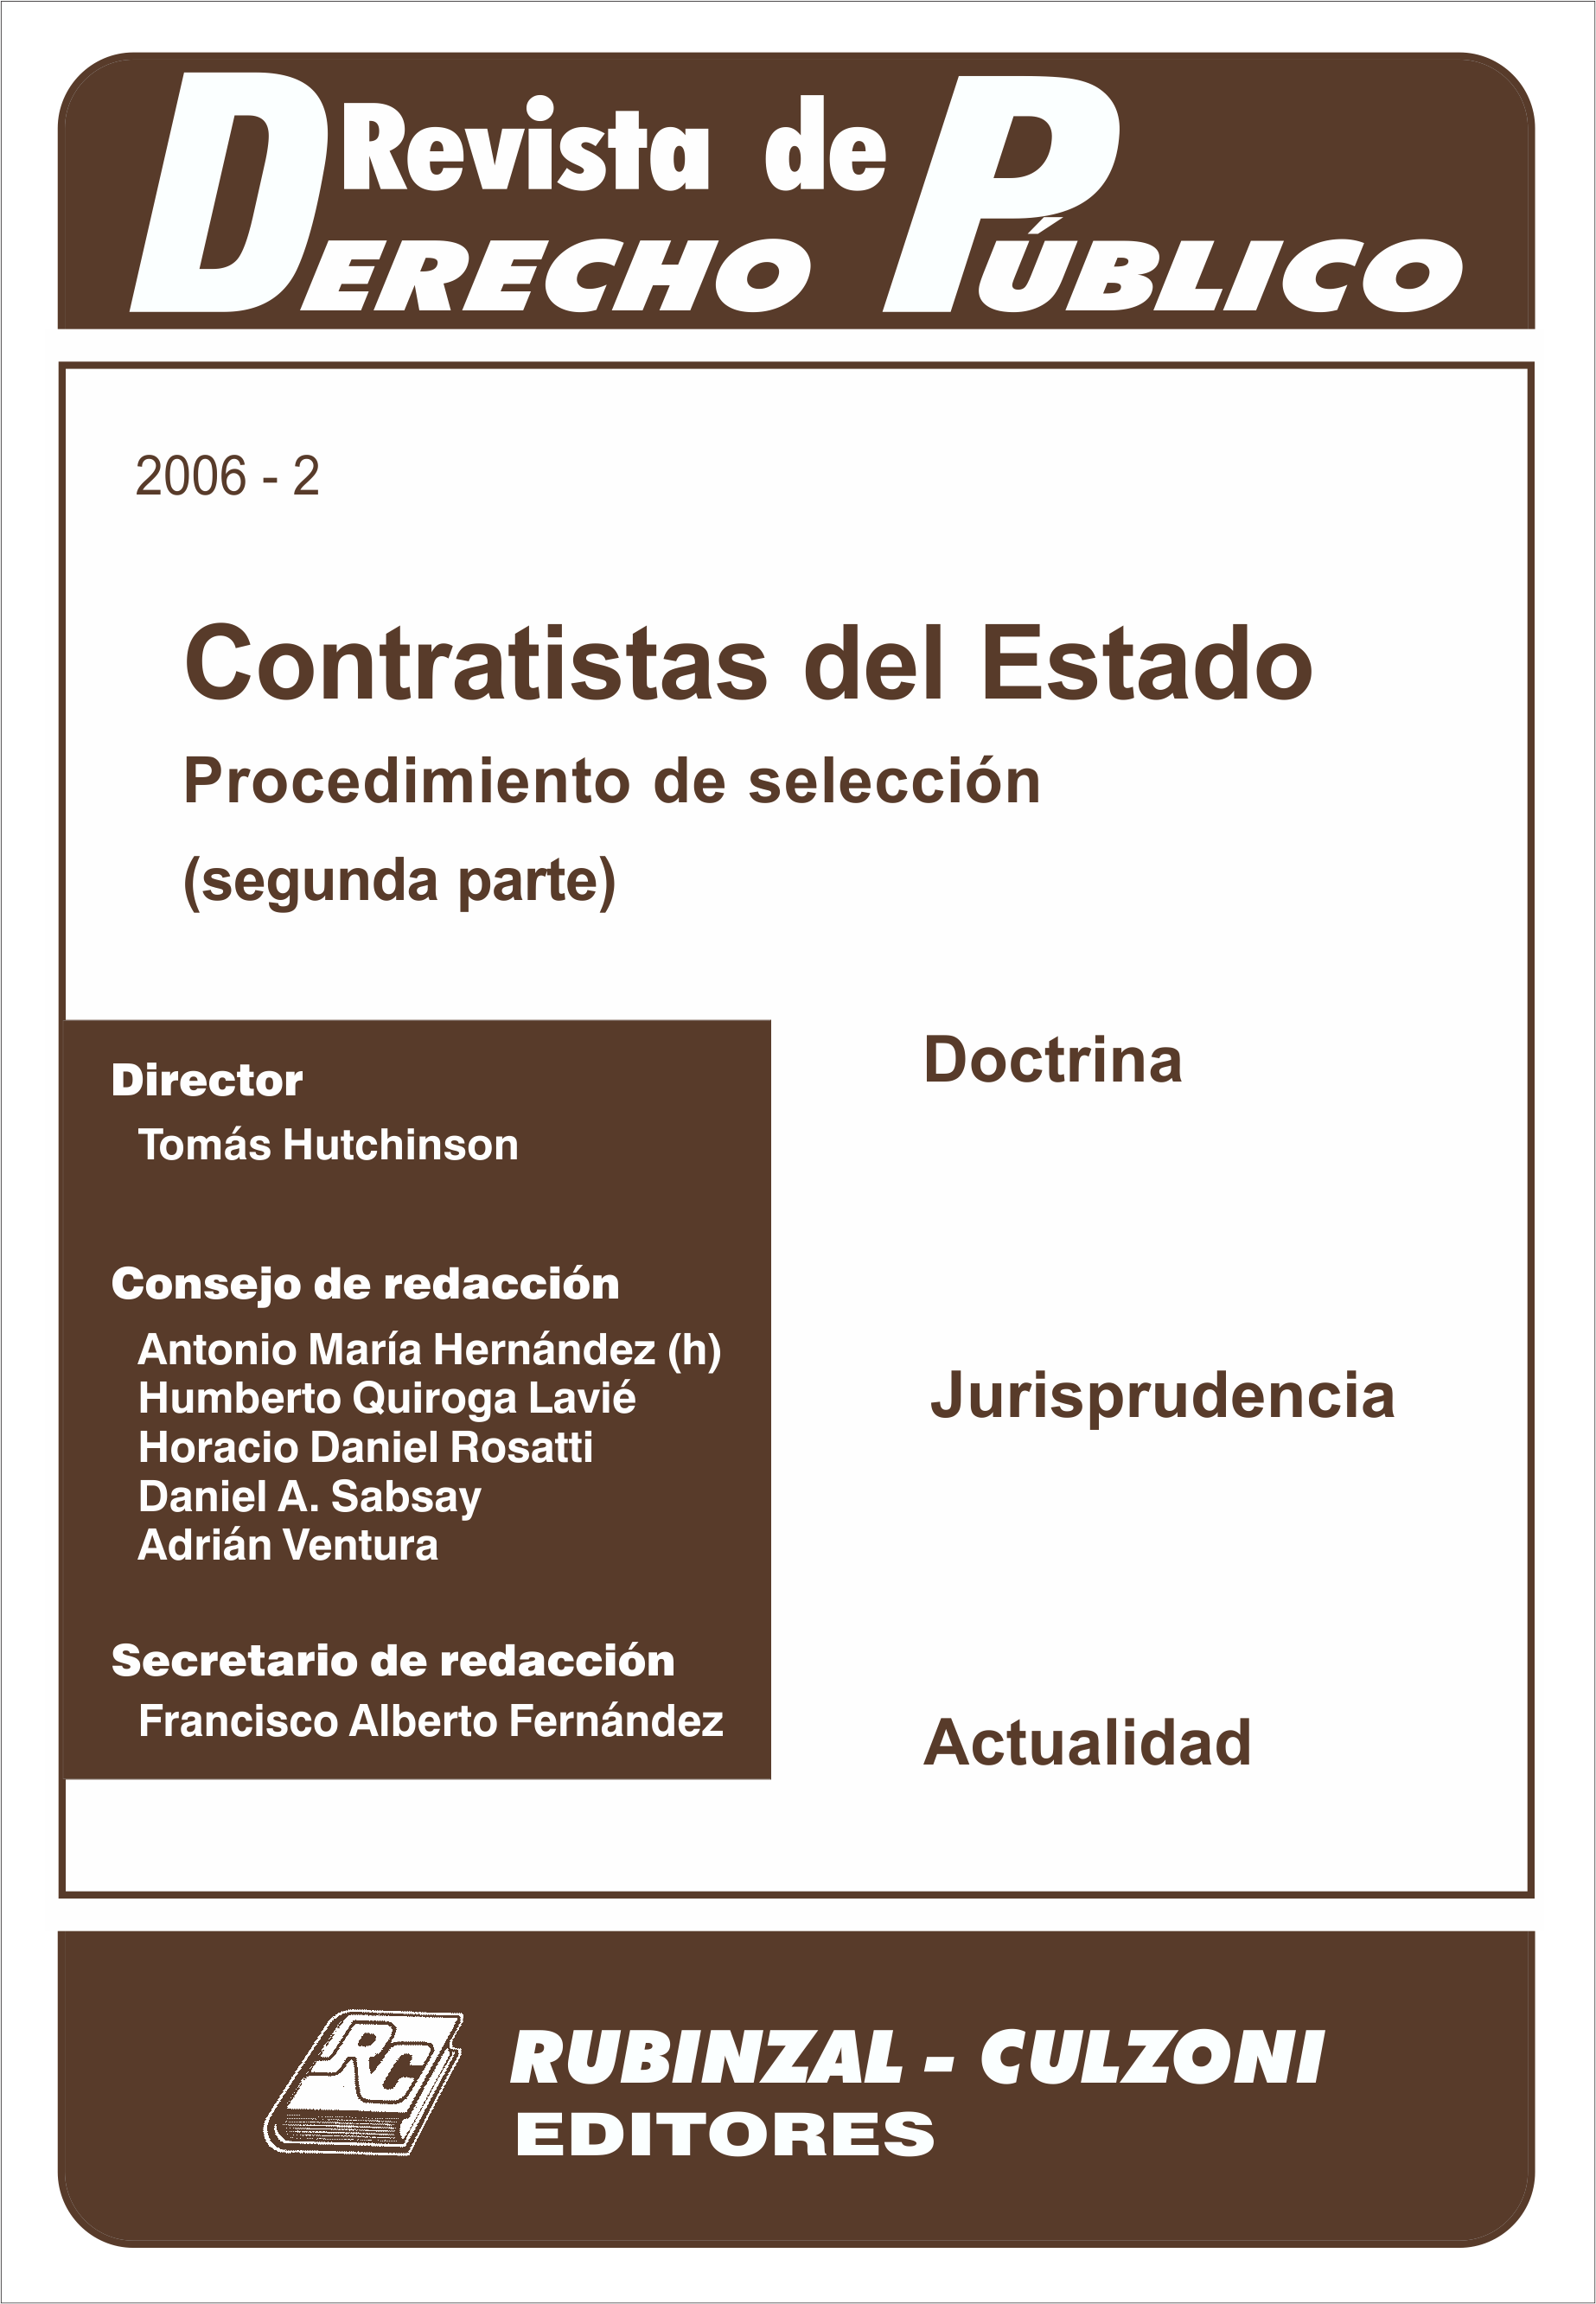 Revista de Derecho Público - Contratistas del Estado. Procedimiento de selección (Segunda parte).